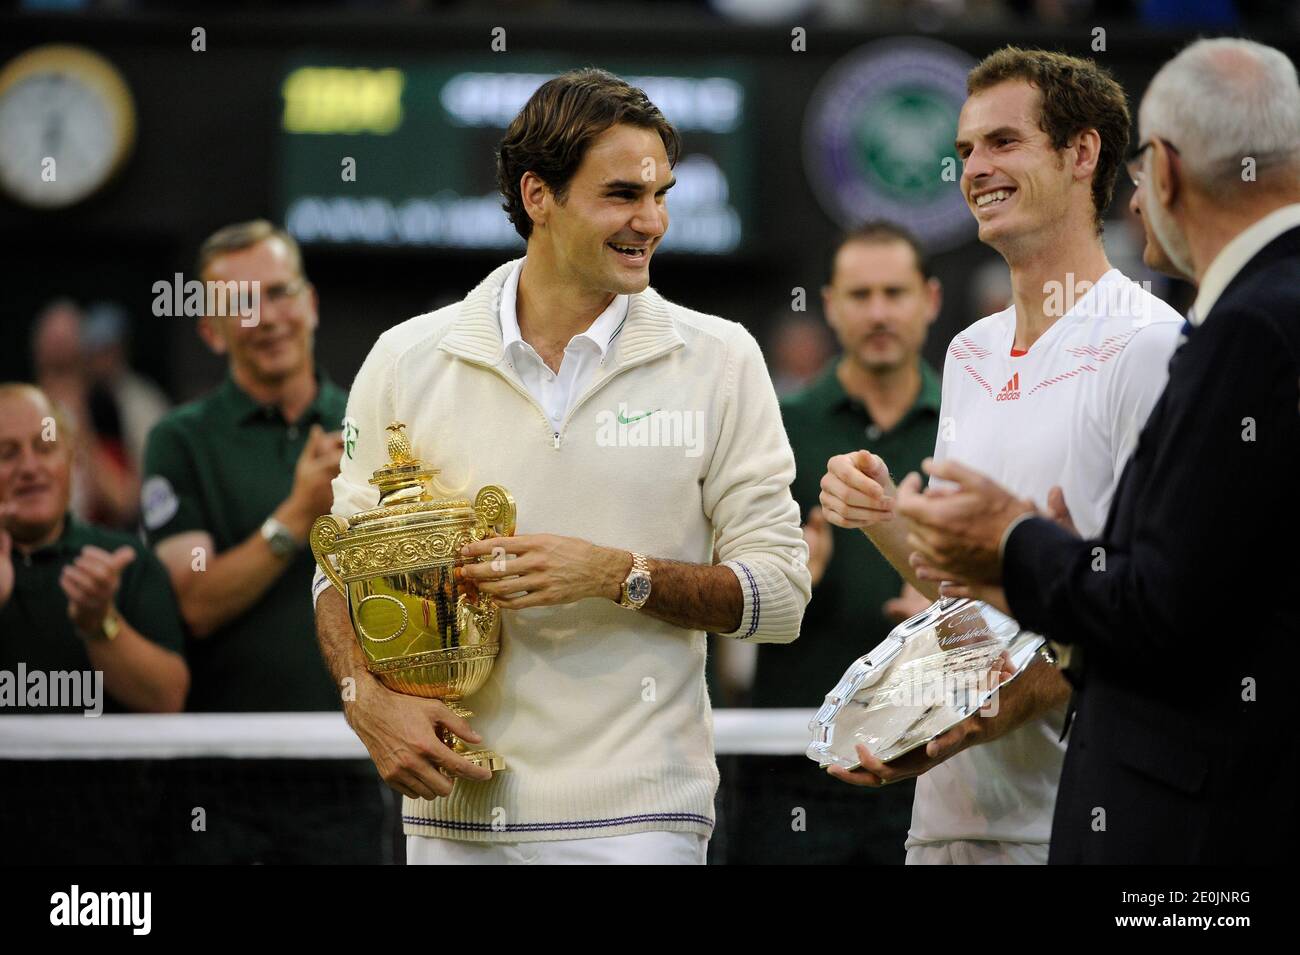 Il svizzero Roger Federer sconfigge, 4-6, 7-5, 6-3, 6-4, Andy Murray della  Gran Bretagna nella loro finale maschile durante il tredici dei Campionati Wimbledon  2012 presso l'All England Lawn Tennis Club di